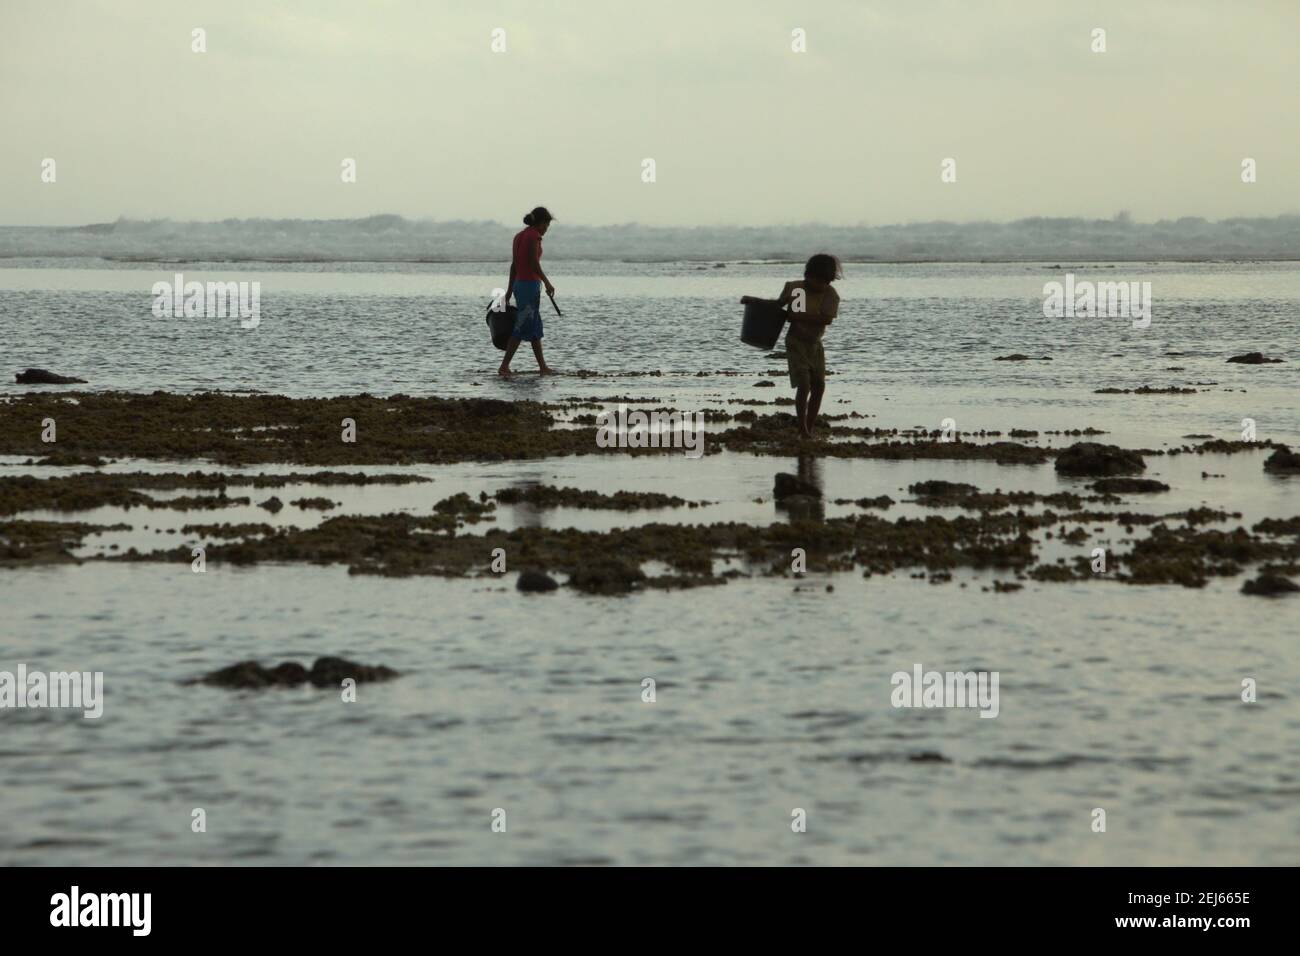 Les jeunes femmes ont fait la silhoueté lorsqu'elles marchent sur la plage rocheuse à marée basse, transportant des seaux en plastique pour recueillir des produits de la mer, une source alternative de nourriture saisonnière à l'île de Sumba, à l'est de Nusa Tenggara, en Indonésie. Banque D'Images